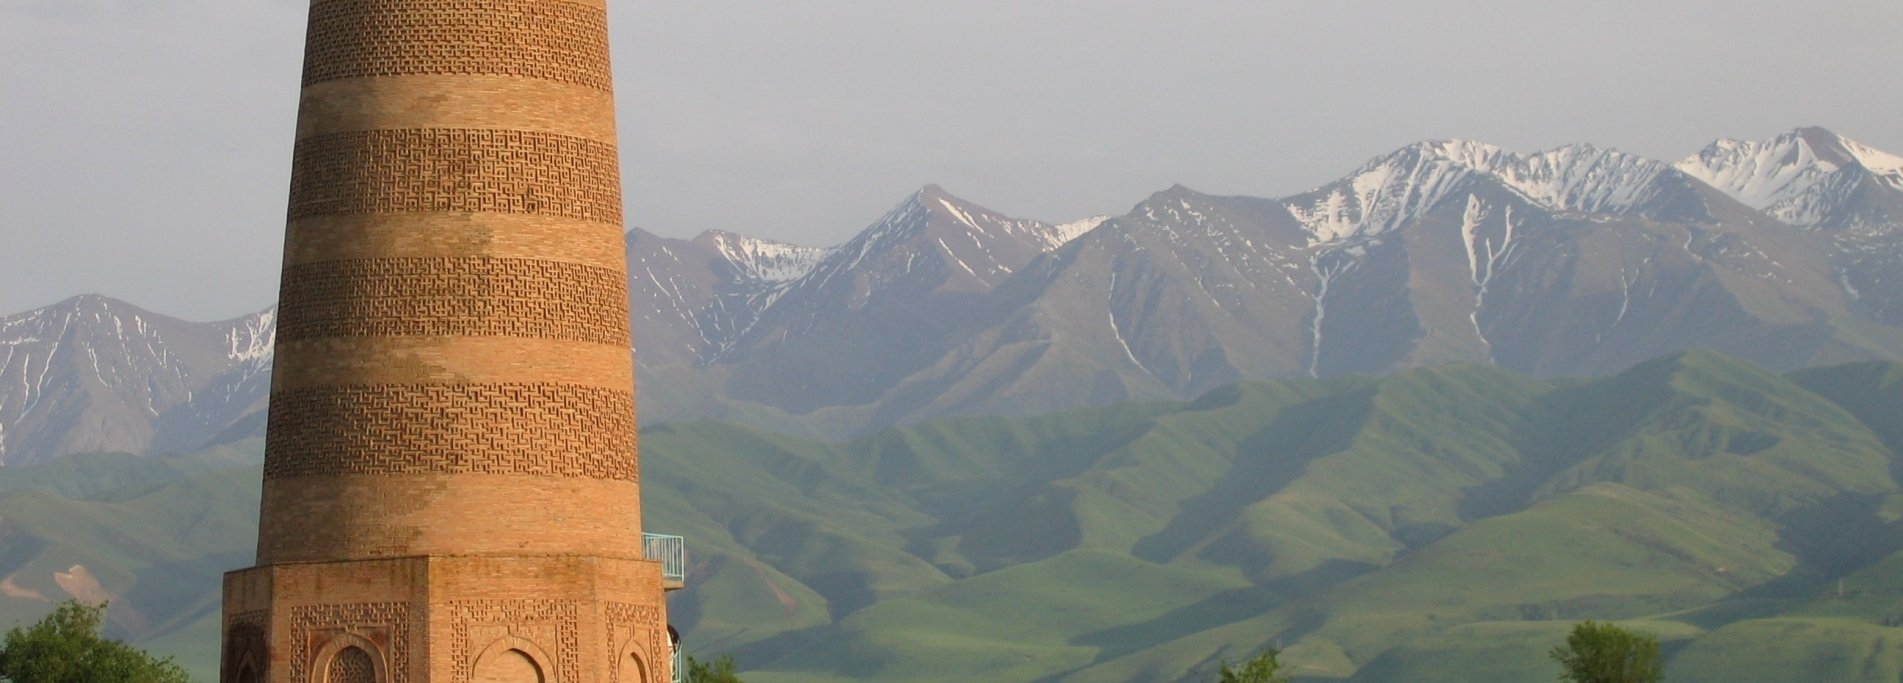 Как открыть банковскую карту в Бишкеке - И попутешествовать по стране